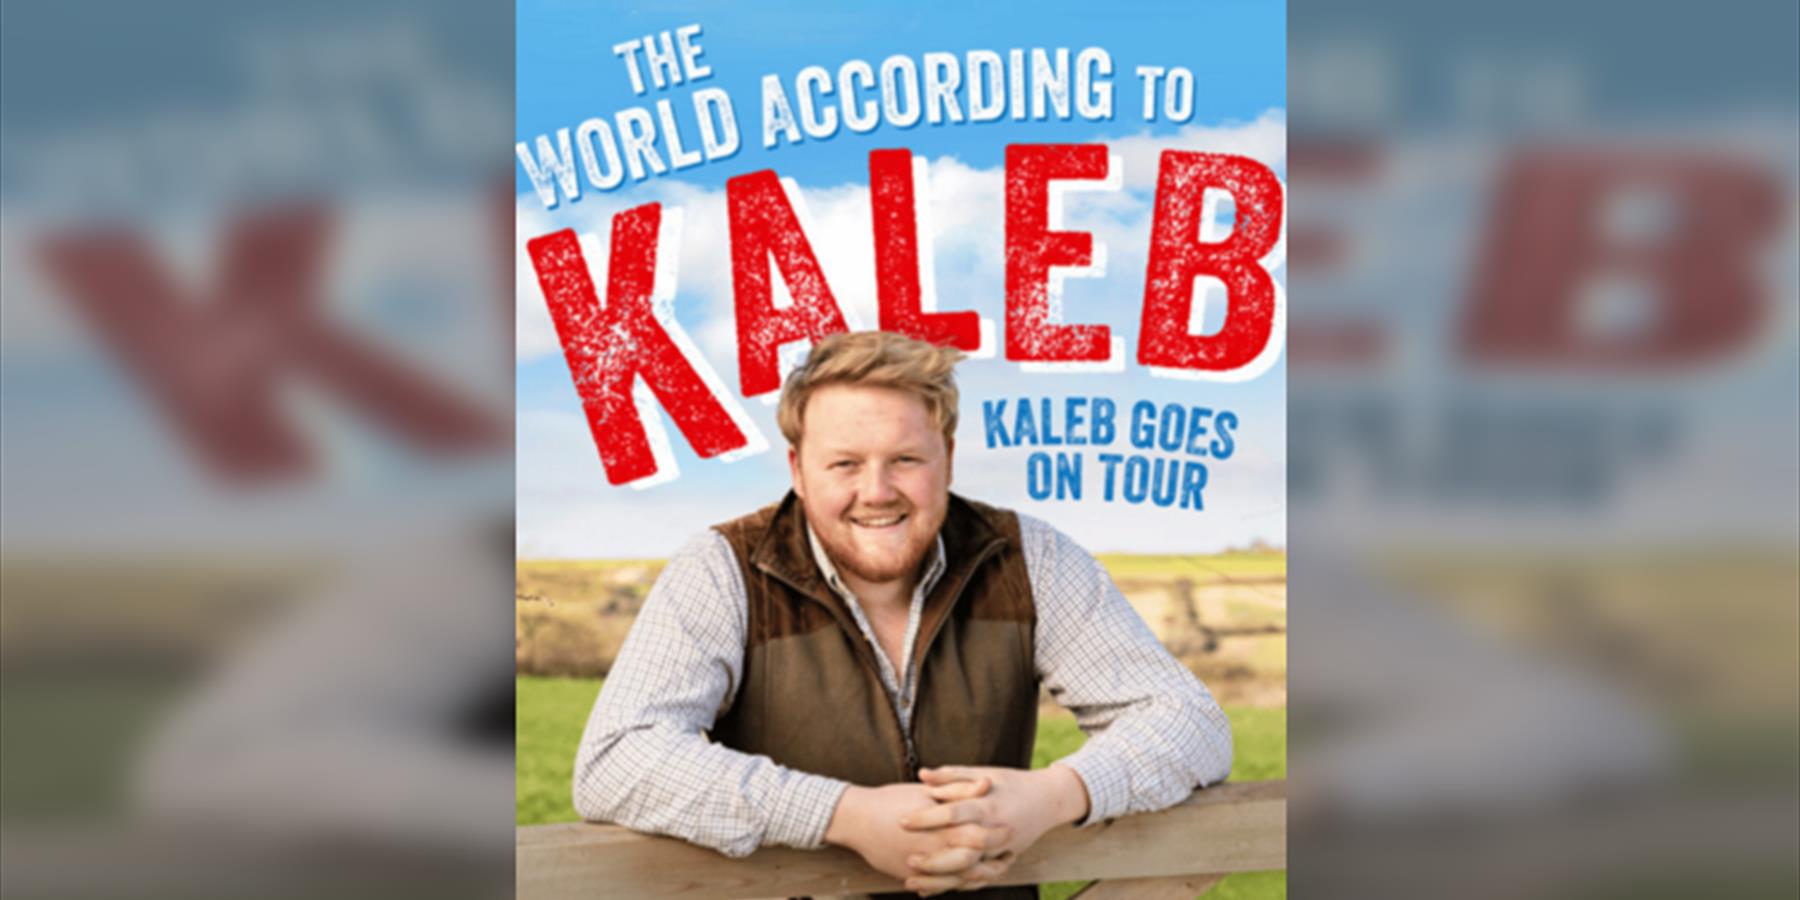 The World According to Kaleb - Kaleb Goes on Tour